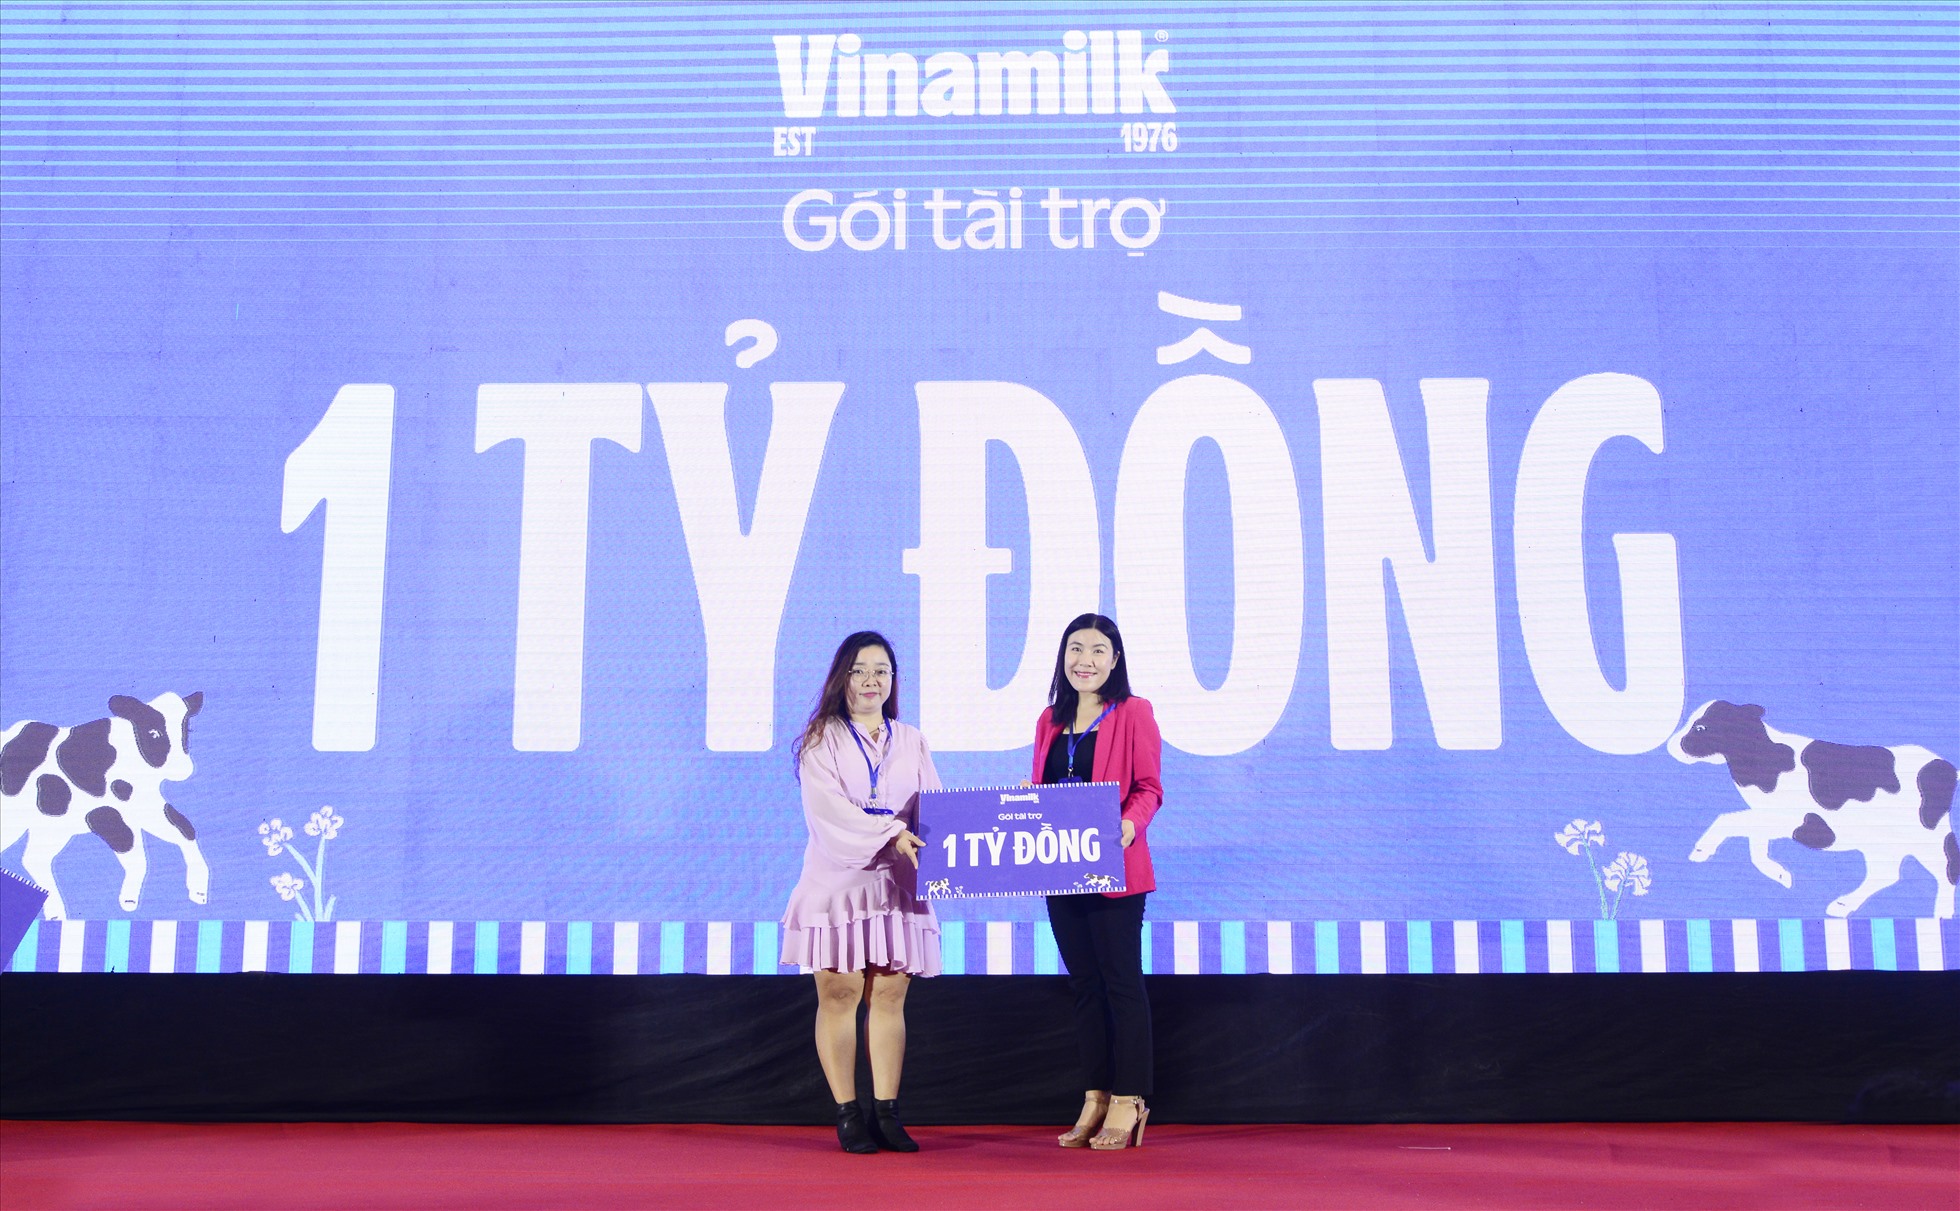 Đại diện Vinamilk trao bảng tài trợ 1 tỉ đồng cho ban tổ chức. Ảnh: Vinamilk